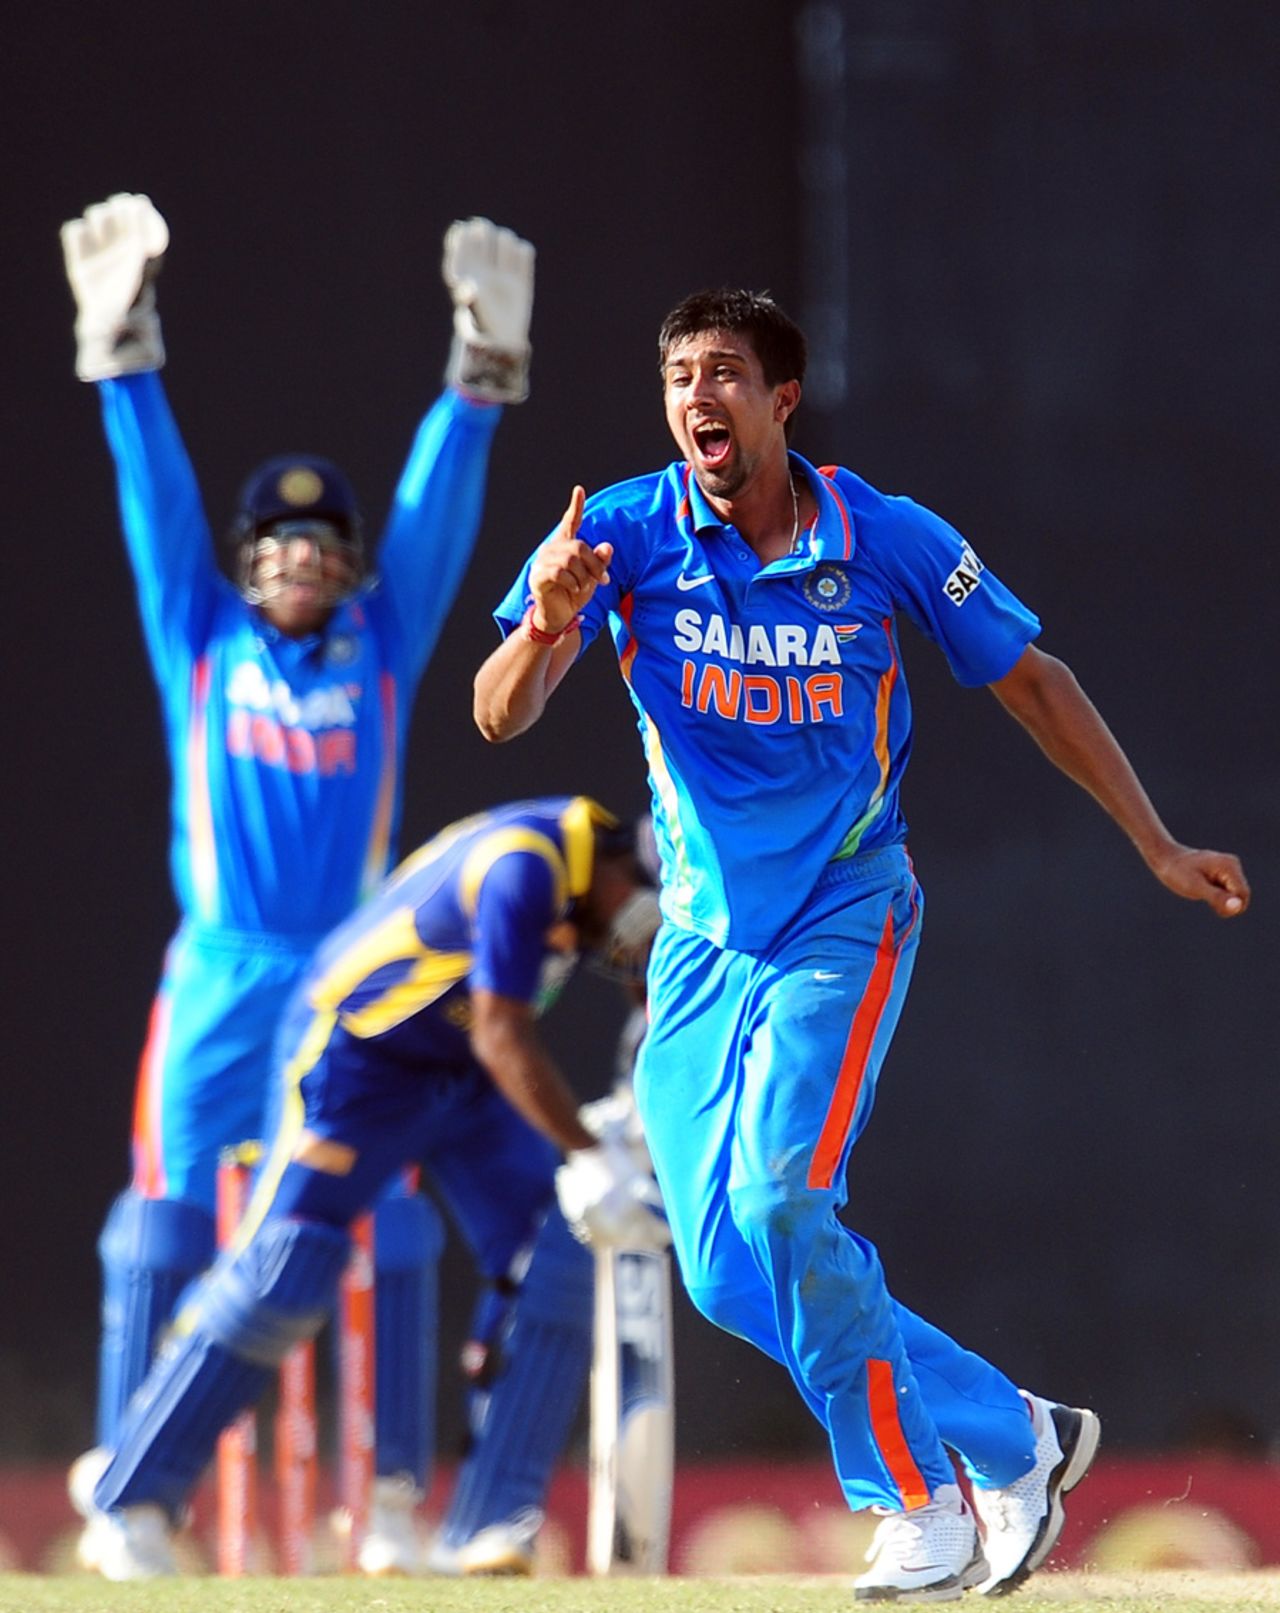 Rahul Sharma celebrates after dismissing Mahela Jayawardene, Sri Lanka v India, 3rd ODI, Colombo, July 28, 2012